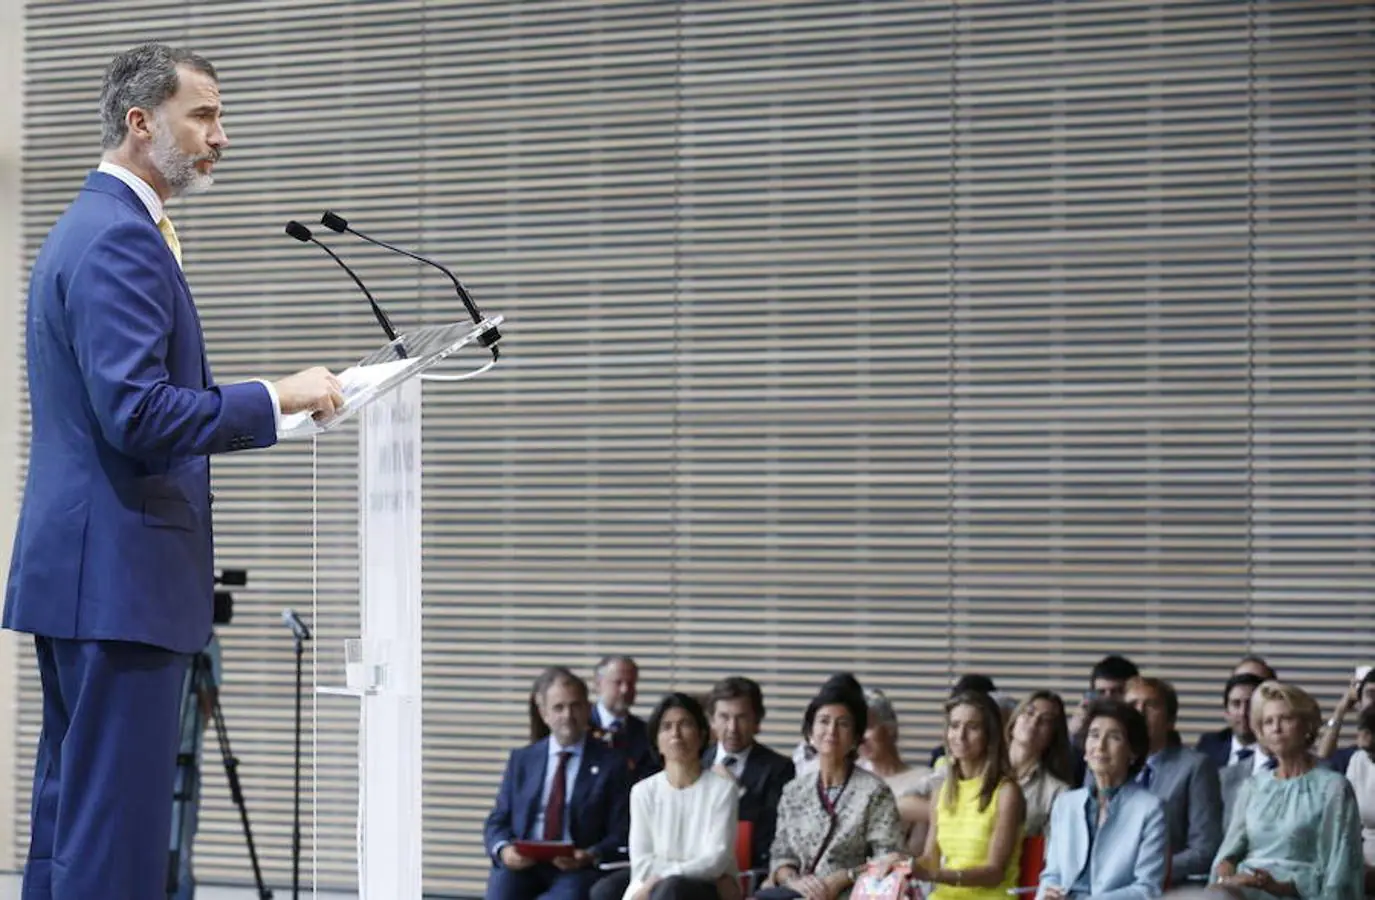 El Rey Felipe pronuncia un discurso en la inauguración del Centro Botín, el nuevo centro de arte que pone en marcha la Fundación Botín bajo un diseño de Renzo Piano y sobre la bahía de Santander. 